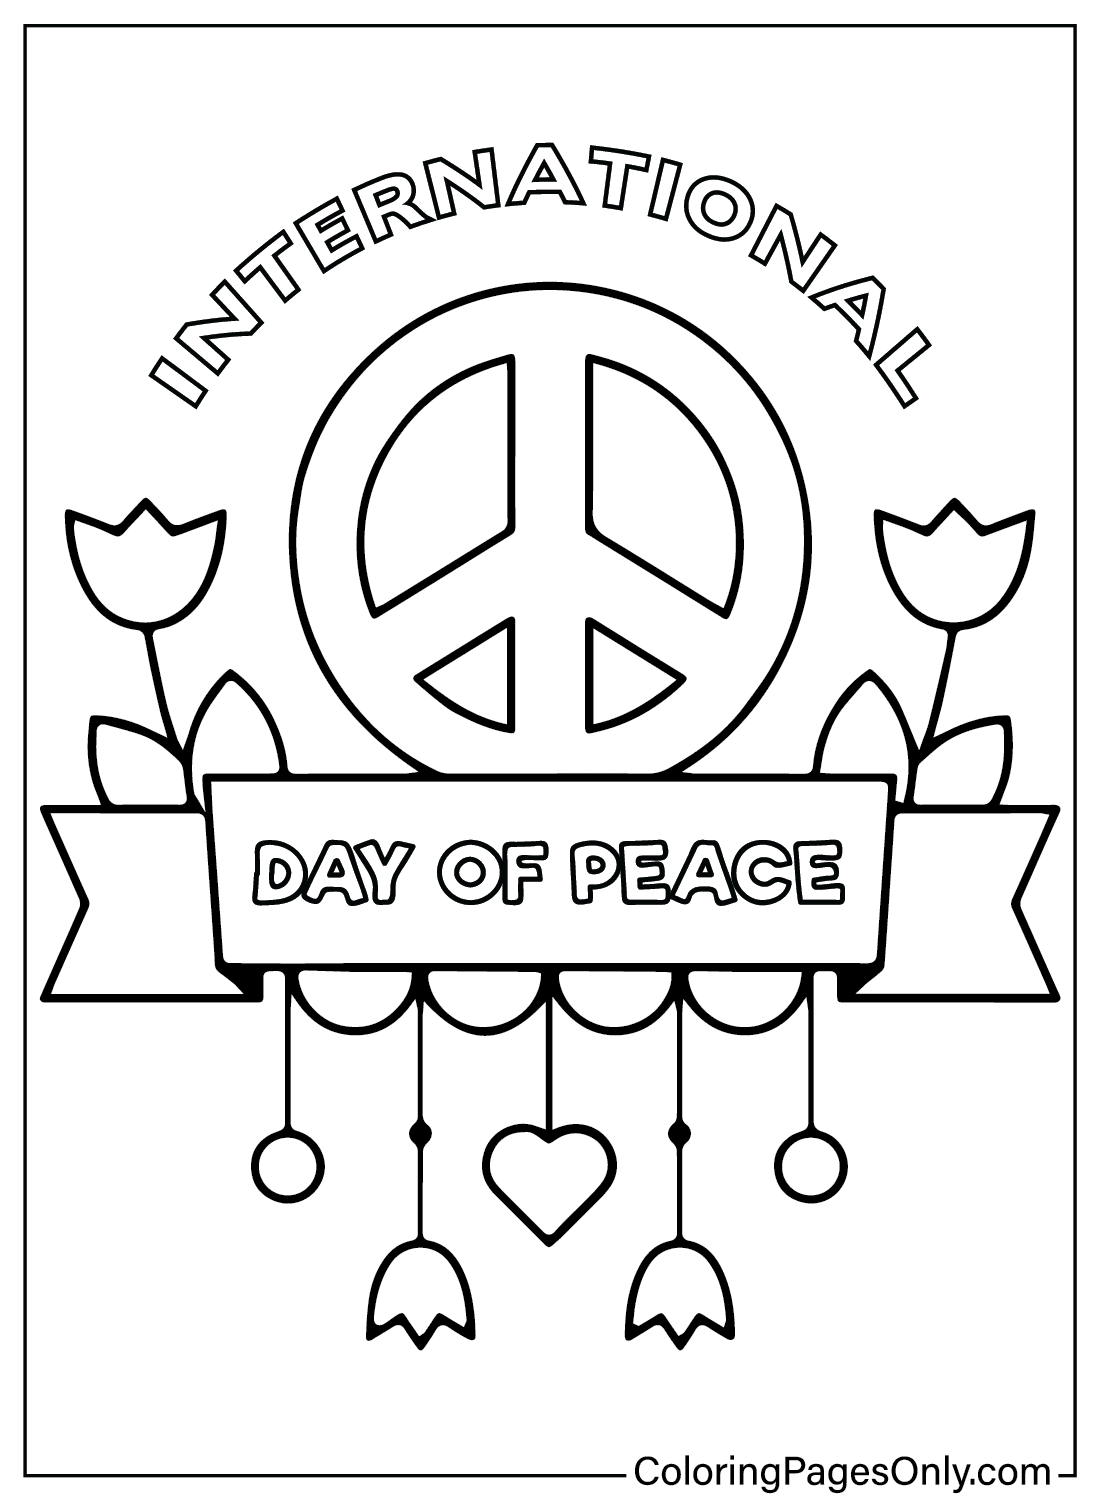 Journée internationale de la paix à colorier